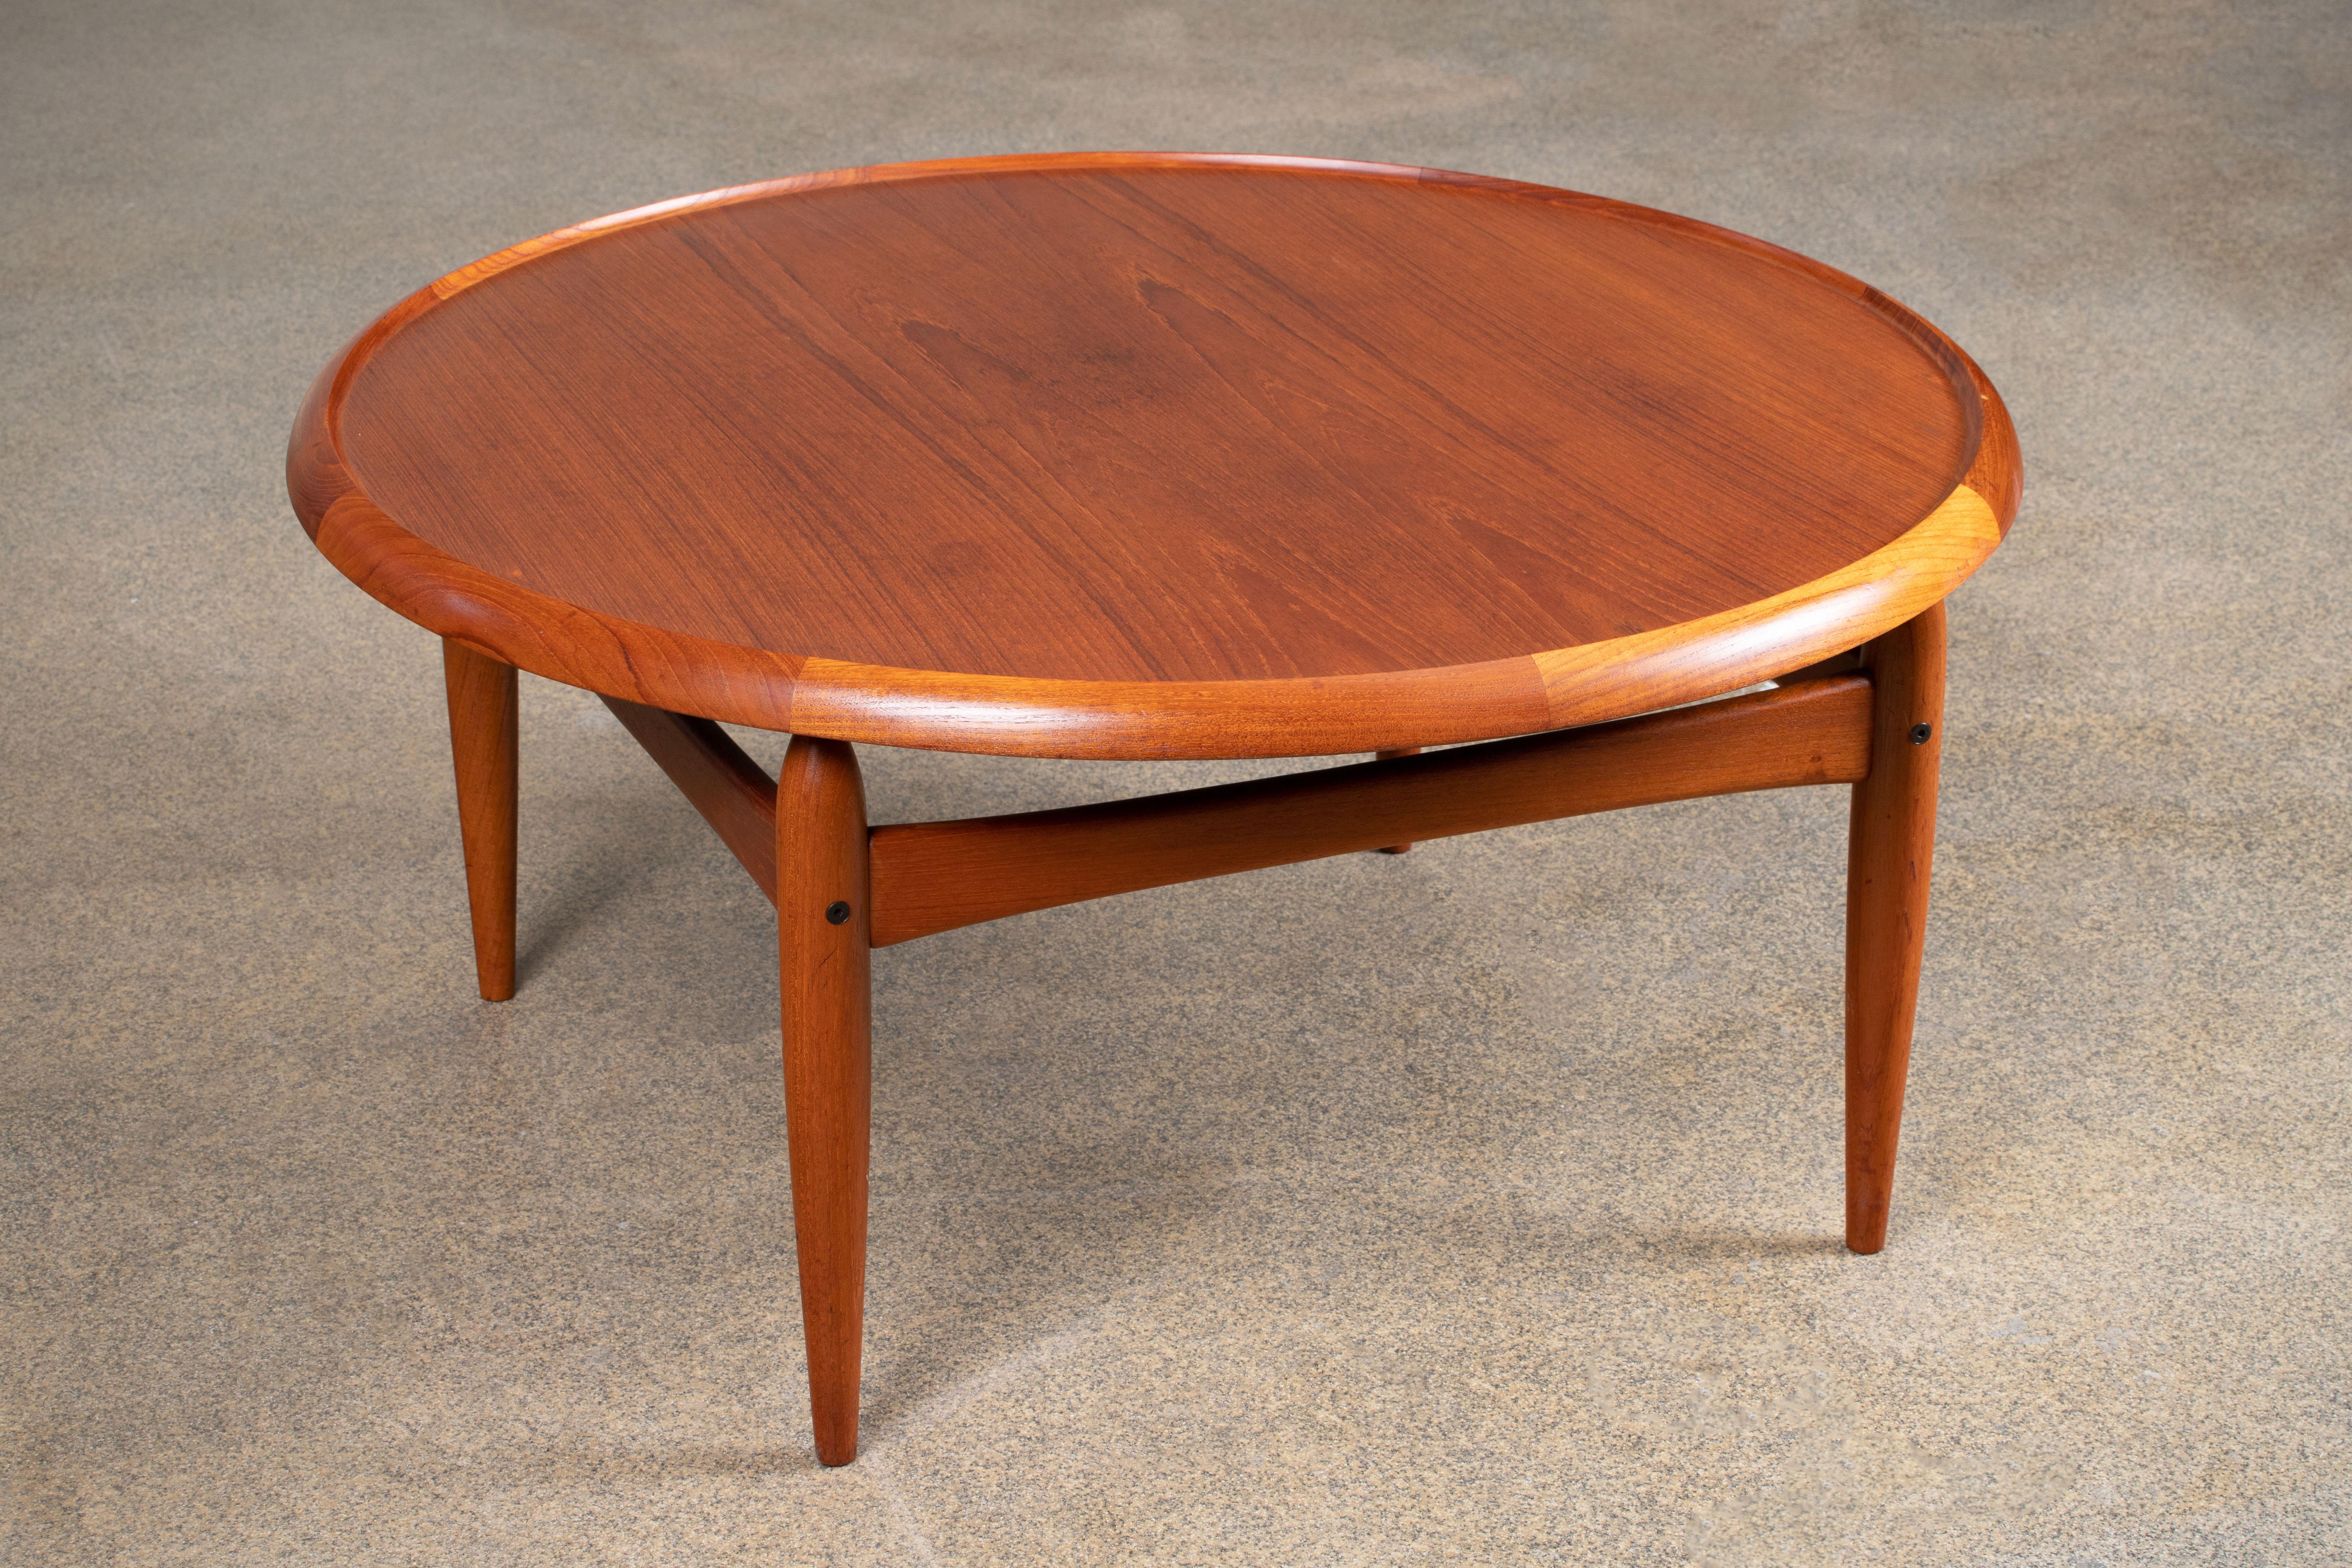 Très rare table basse avec plateau réversible, conçue par Kurt Østervig et produite par Jason Møbler, Danemark. La table est fabriquée en bois de teck et comporte un plateau en formica noir.